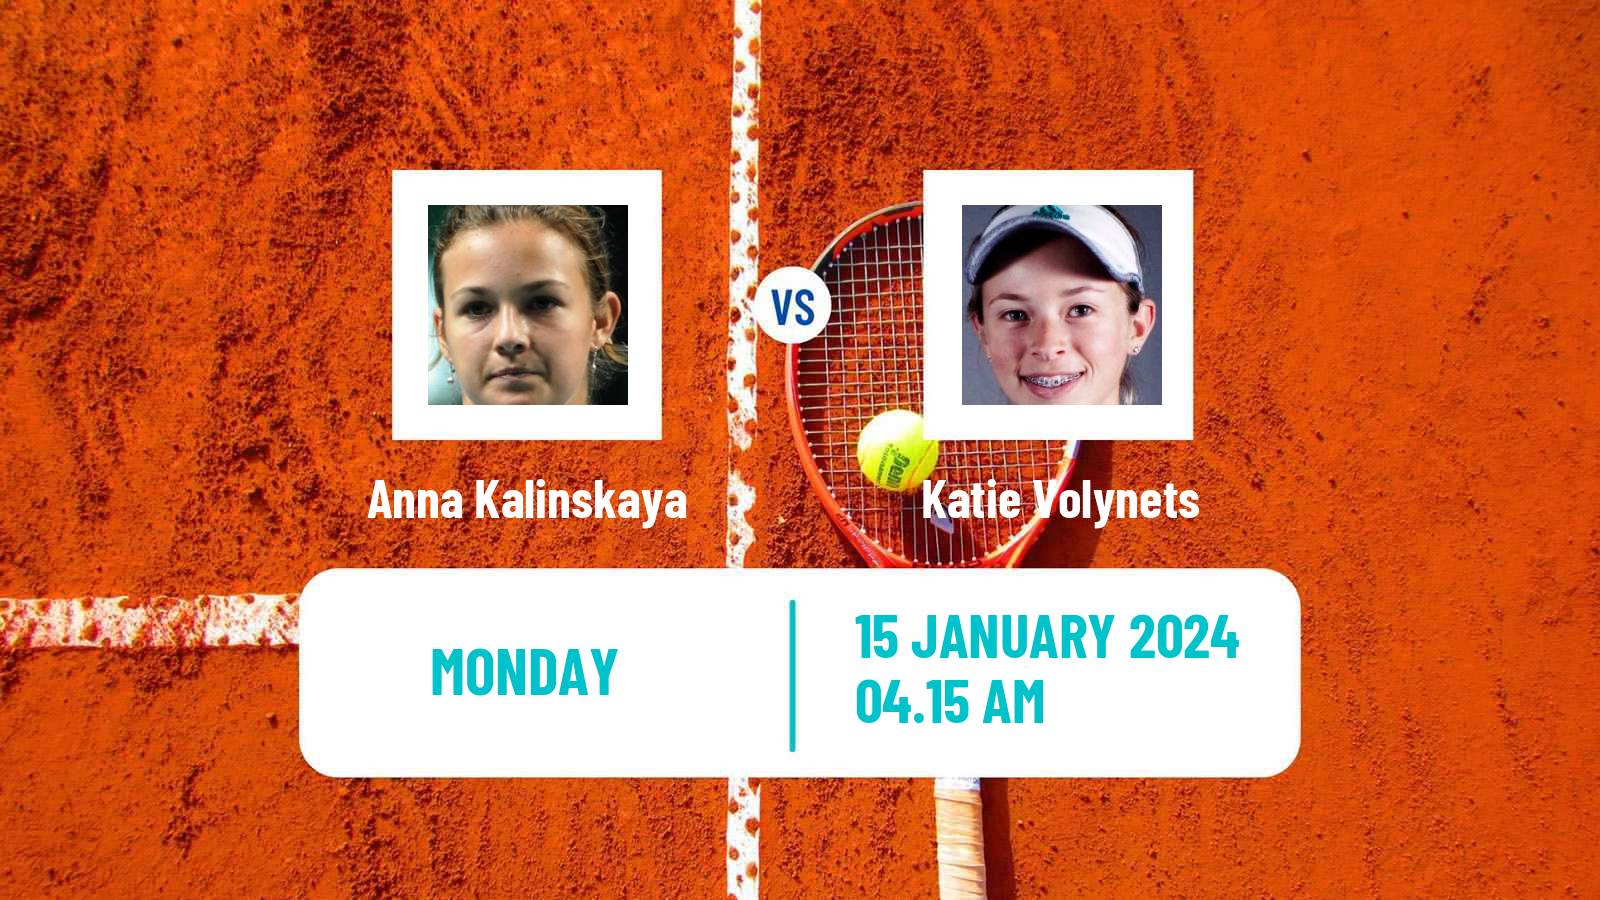 Tennis WTA Australian Open Anna Kalinskaya - Katie Volynets